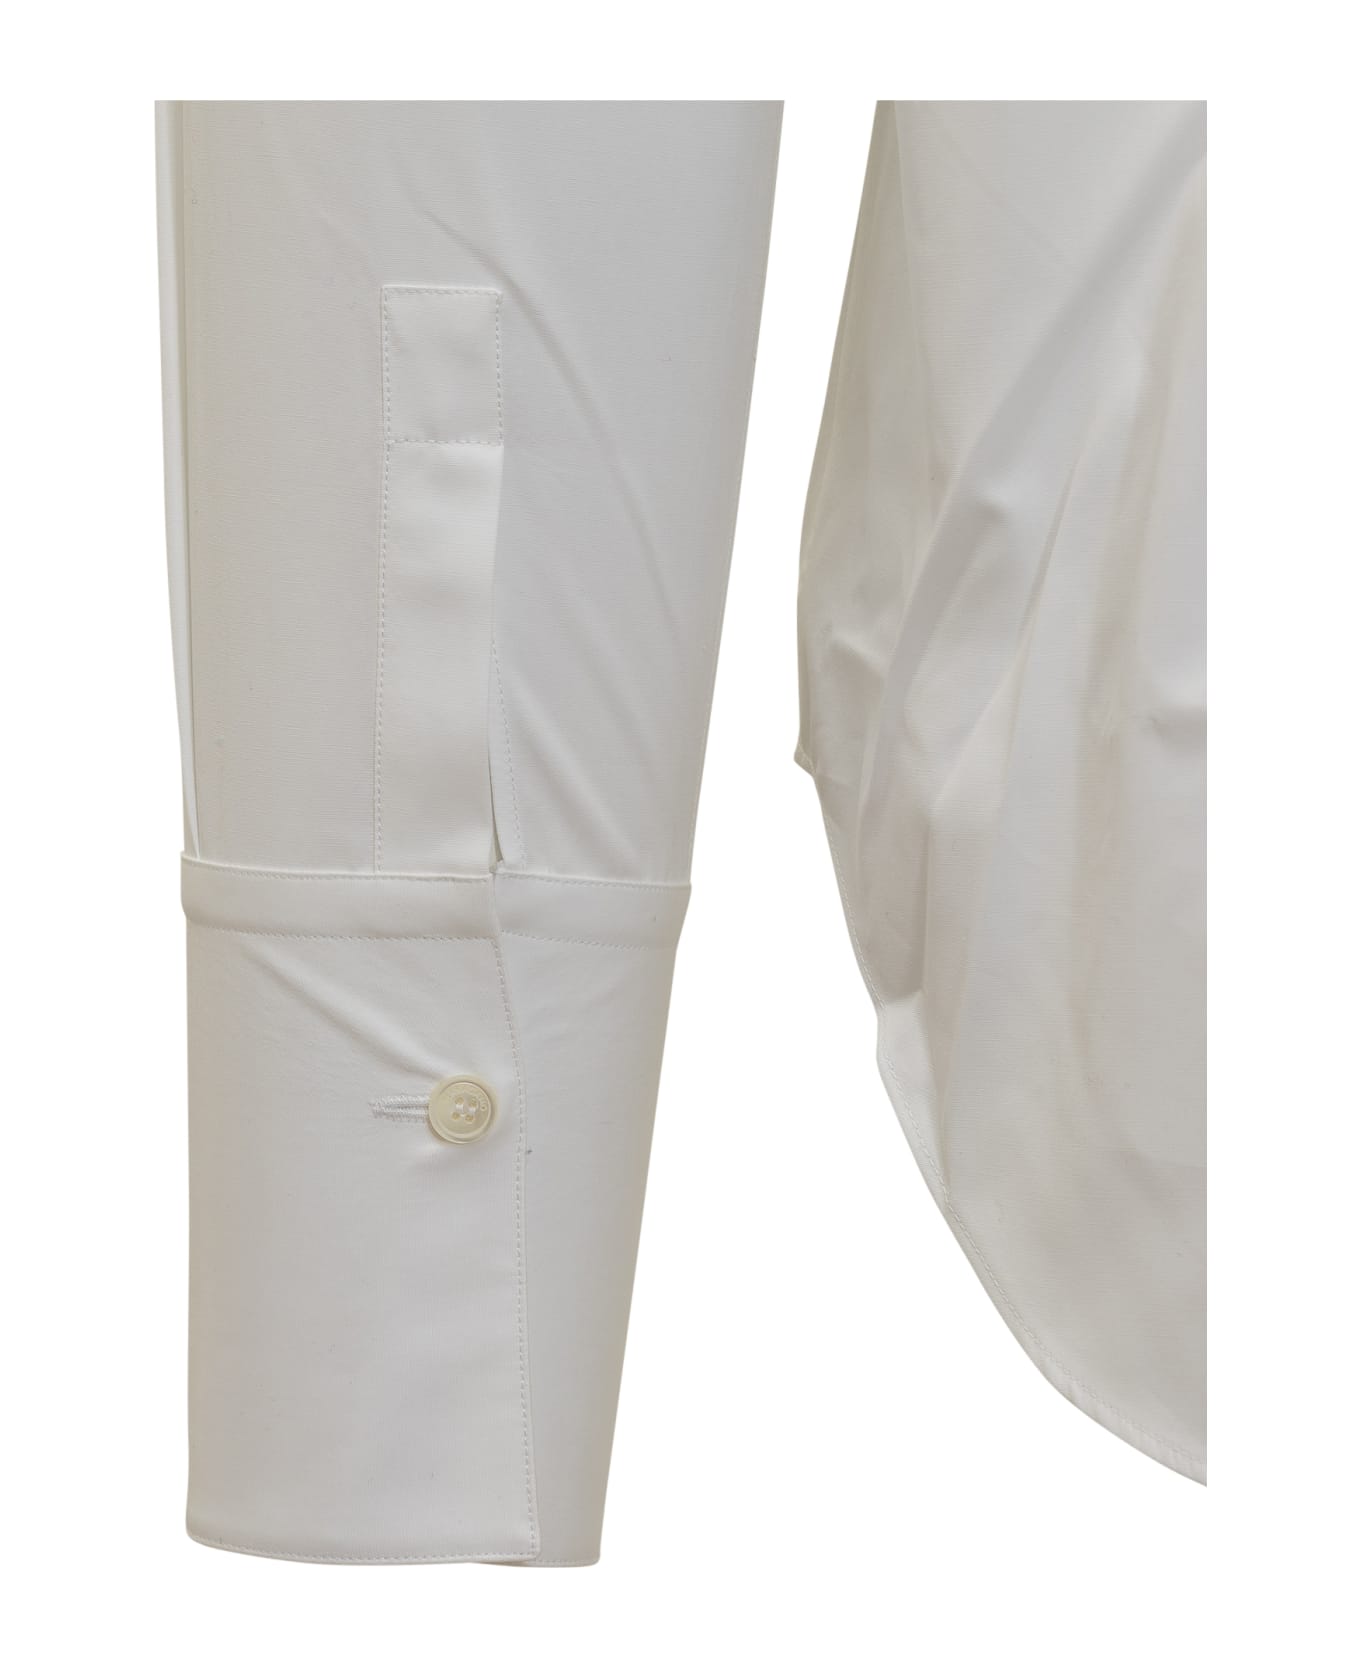 Ferragamo Shirt - WHITE シャツ